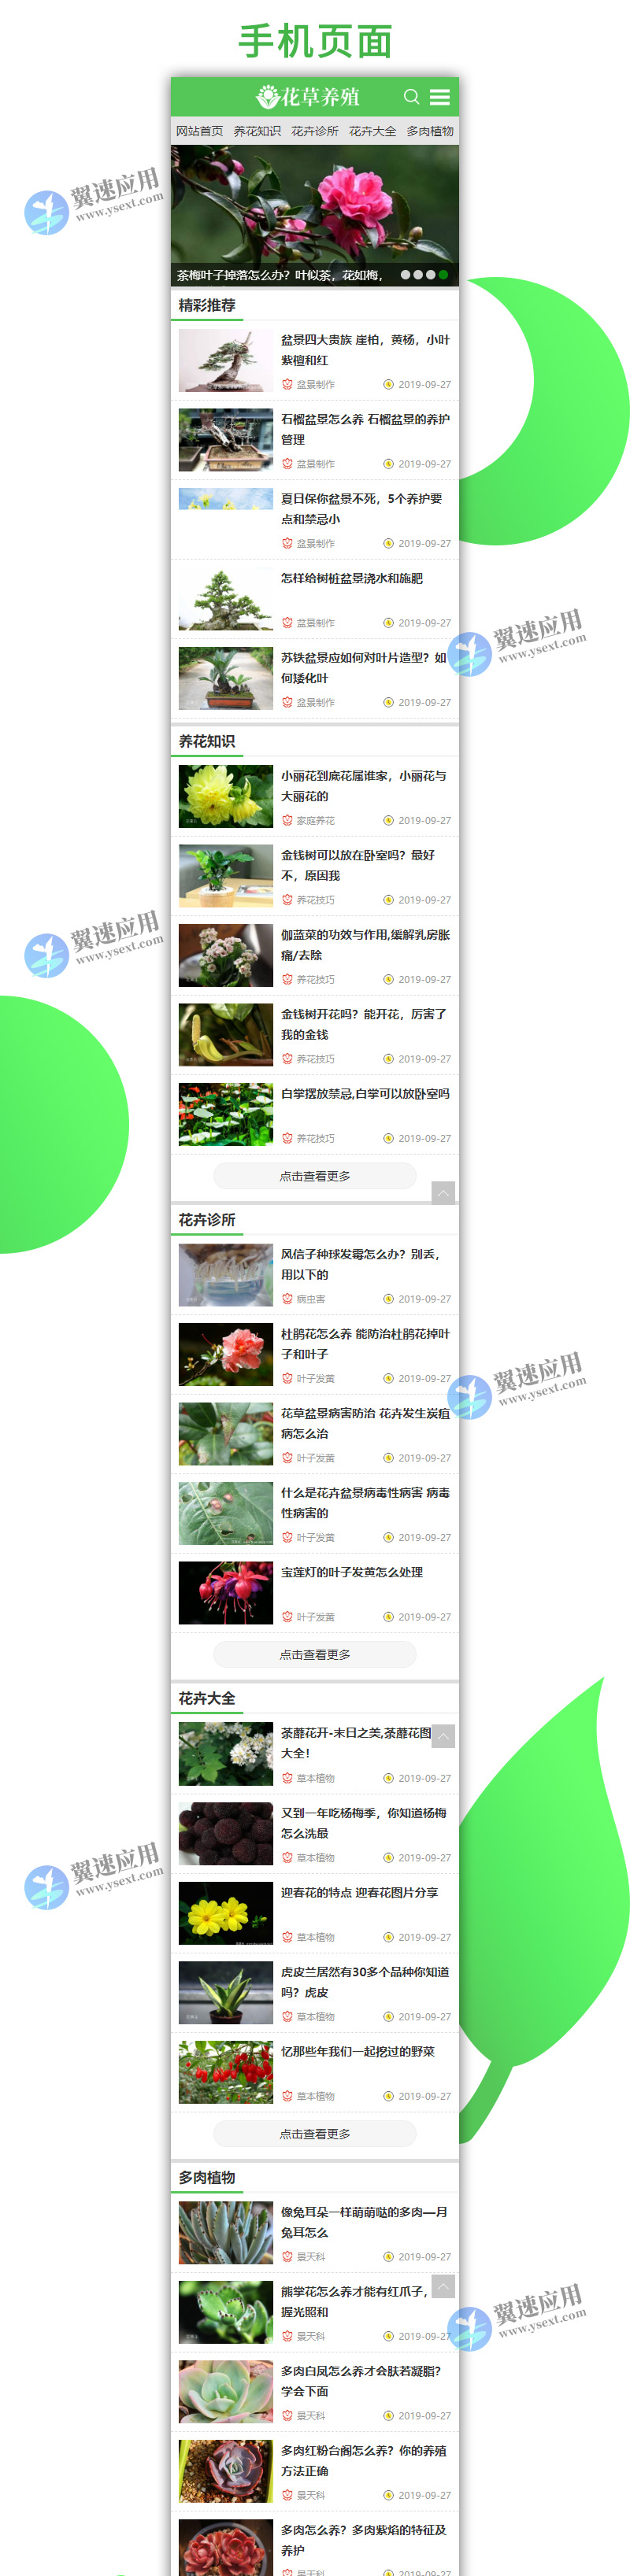 花卉养殖新闻资讯类1.jpg